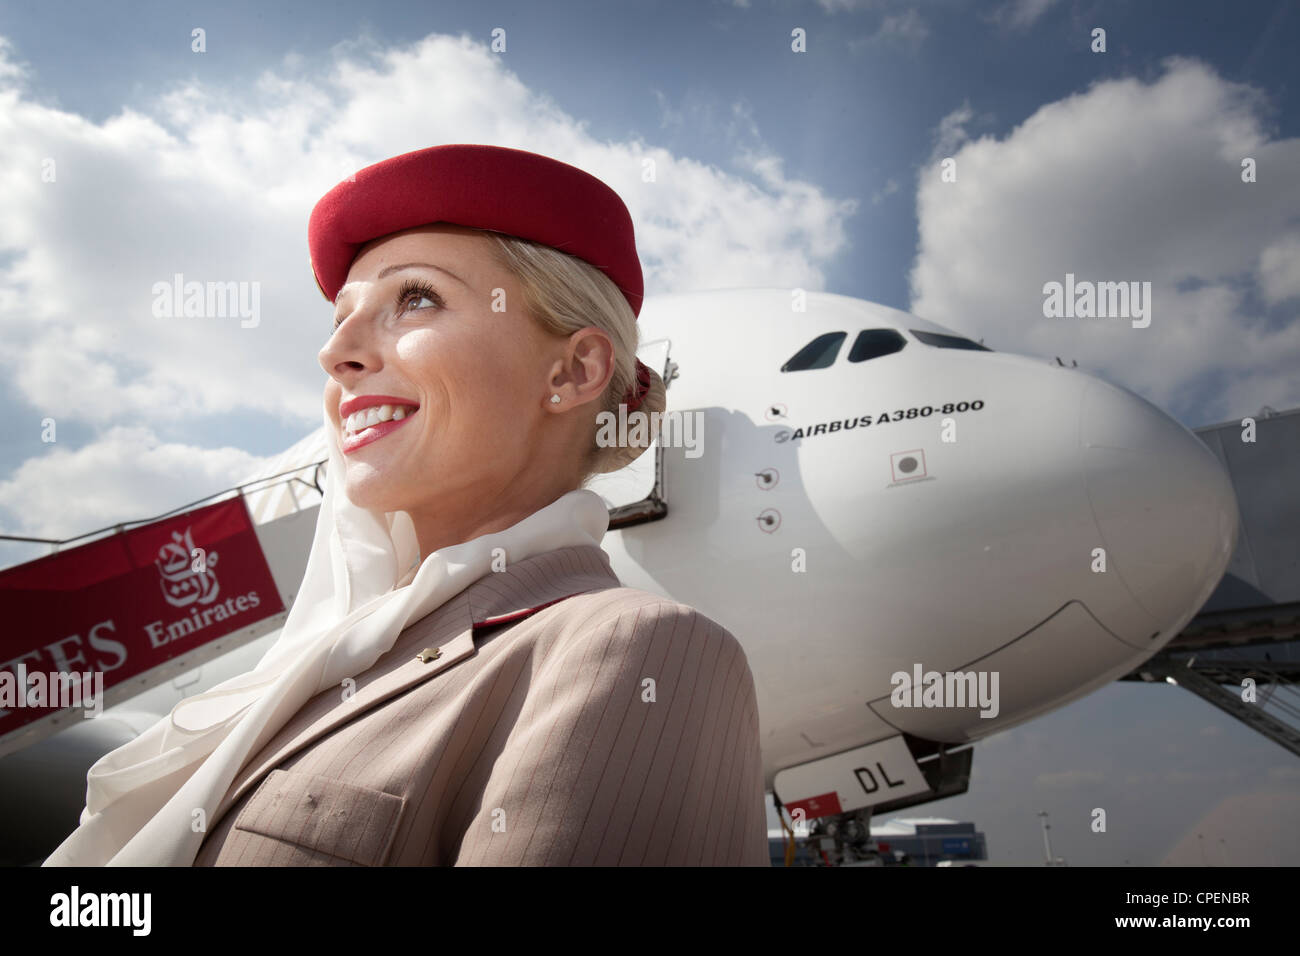 Emirates Airline airhostess à l'aéroport de Manchester avec un Airbus A380 24,99 $ Banque D'Images